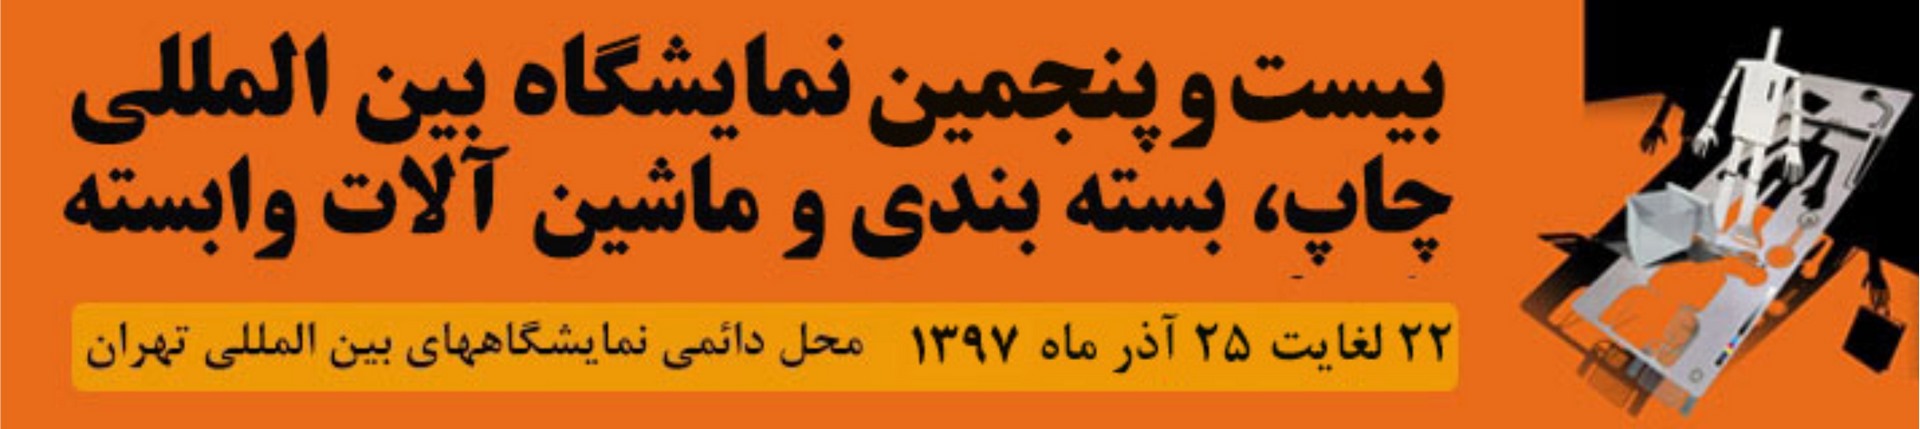 آغاز بکار بیست و پنجمین نمایشگاه بین المللی چاپ و بسته بندی در تهران